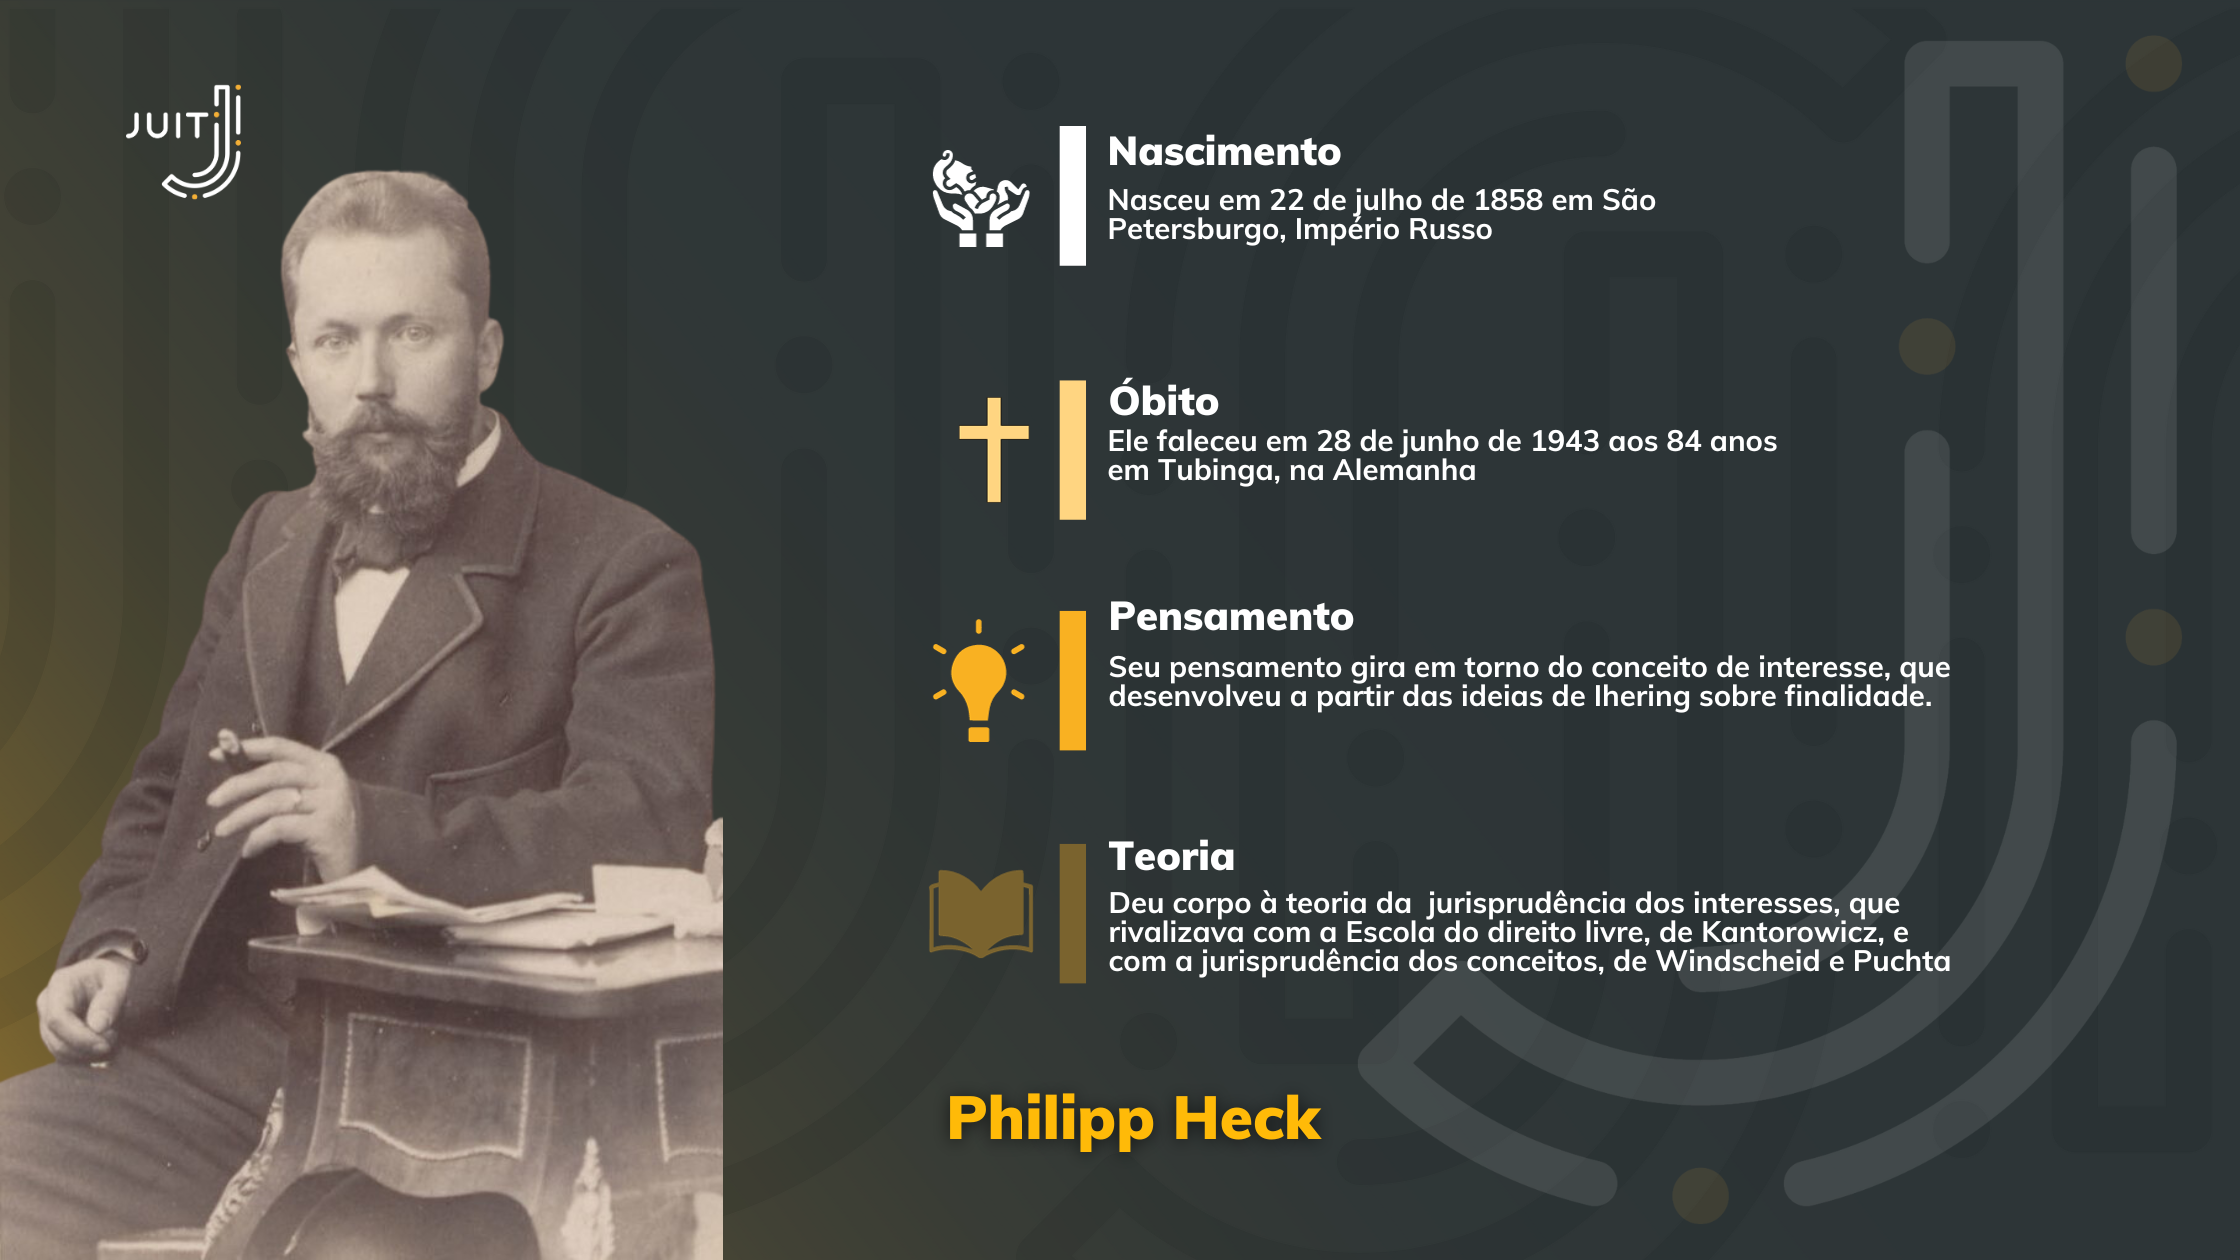 Phillipp Heck